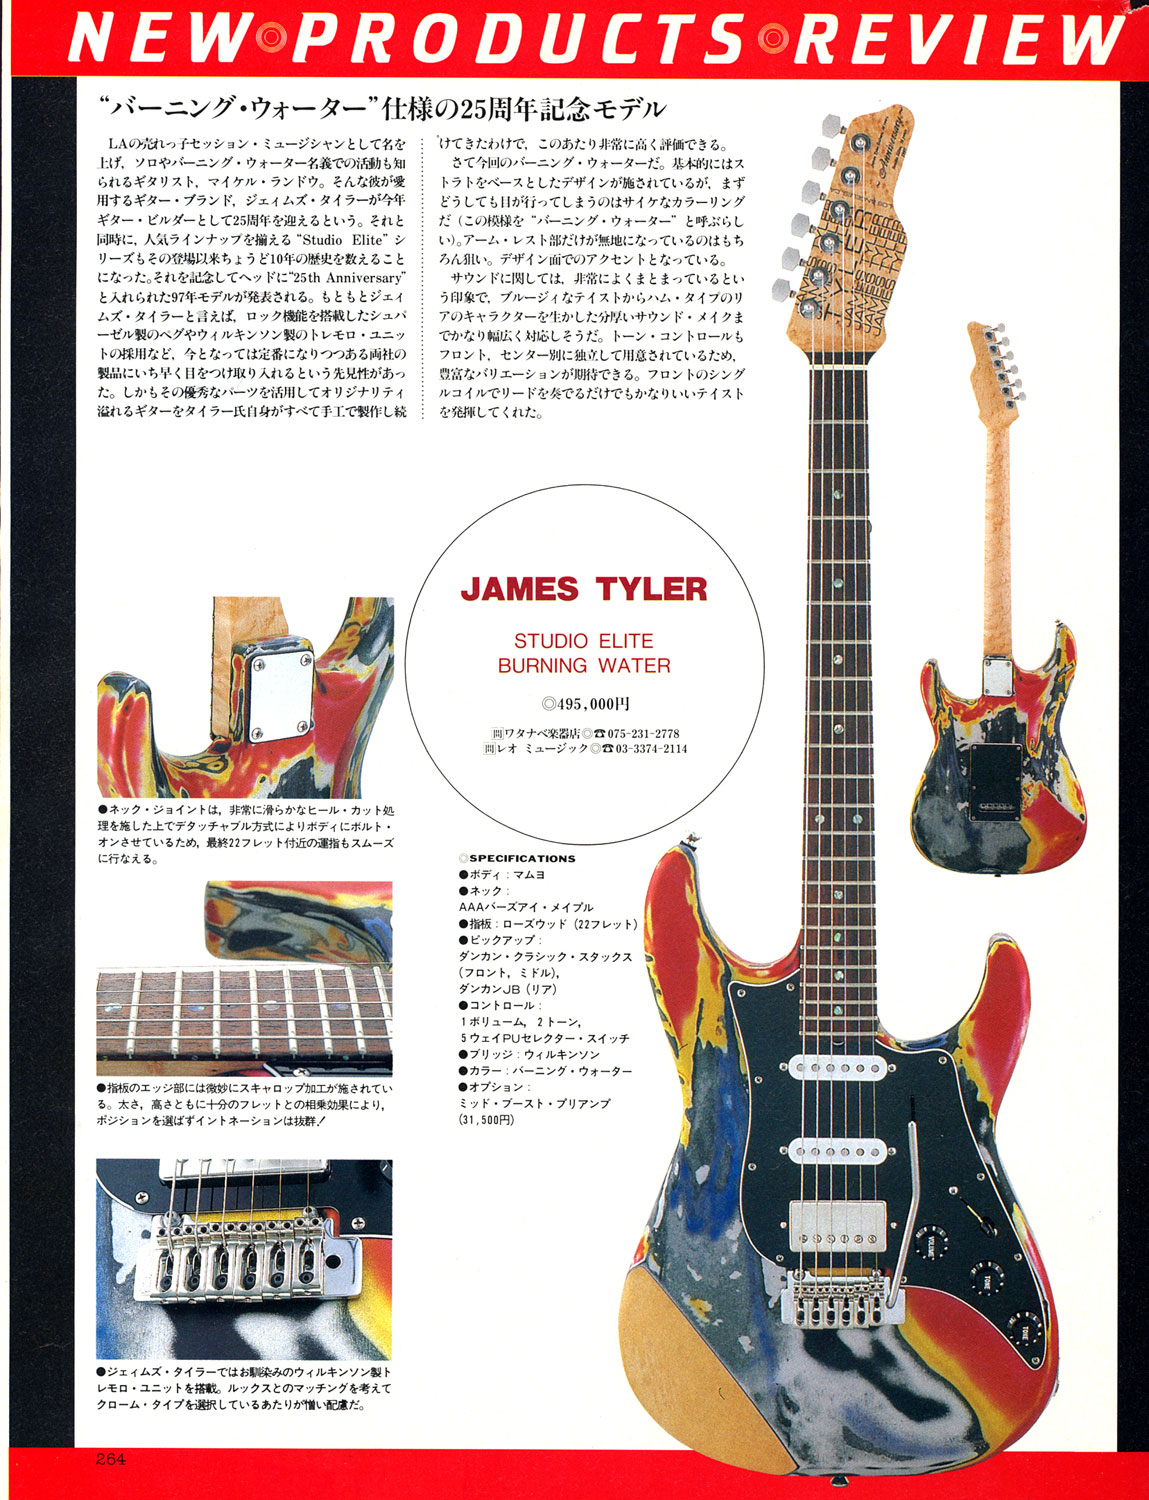 Copy of 1997 Guitar Magazine